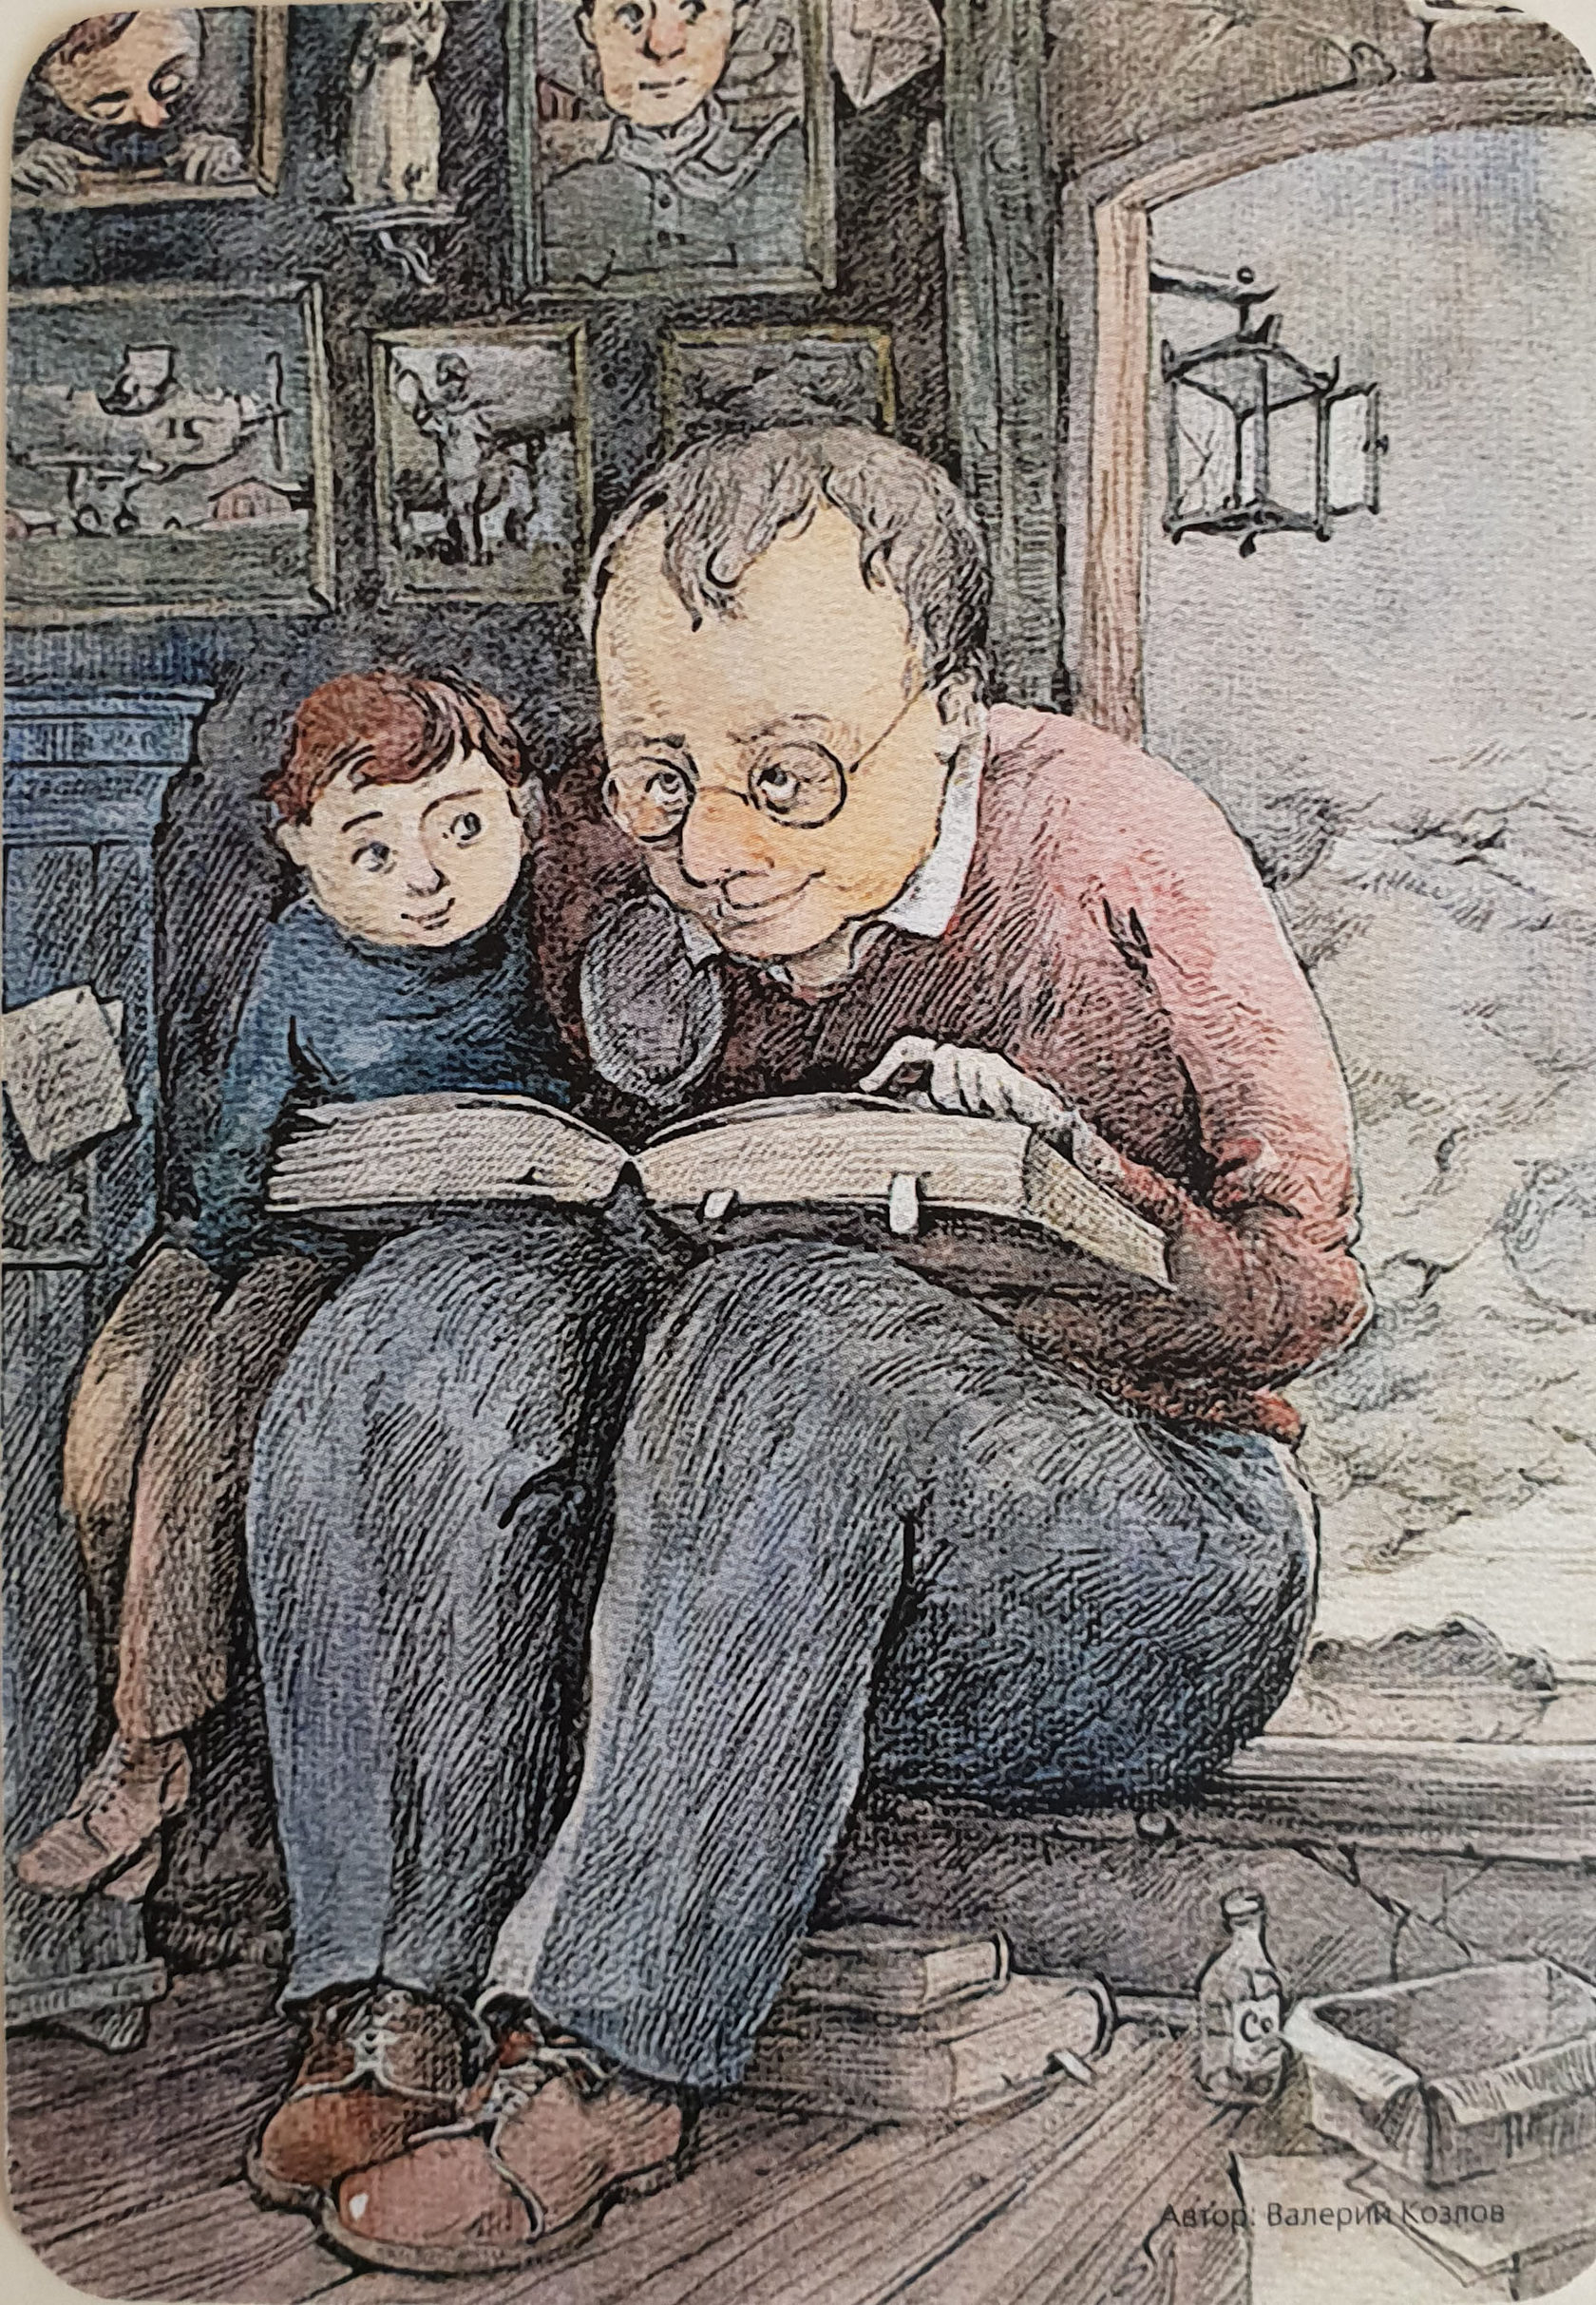 Дедушка и внук иллюстрация